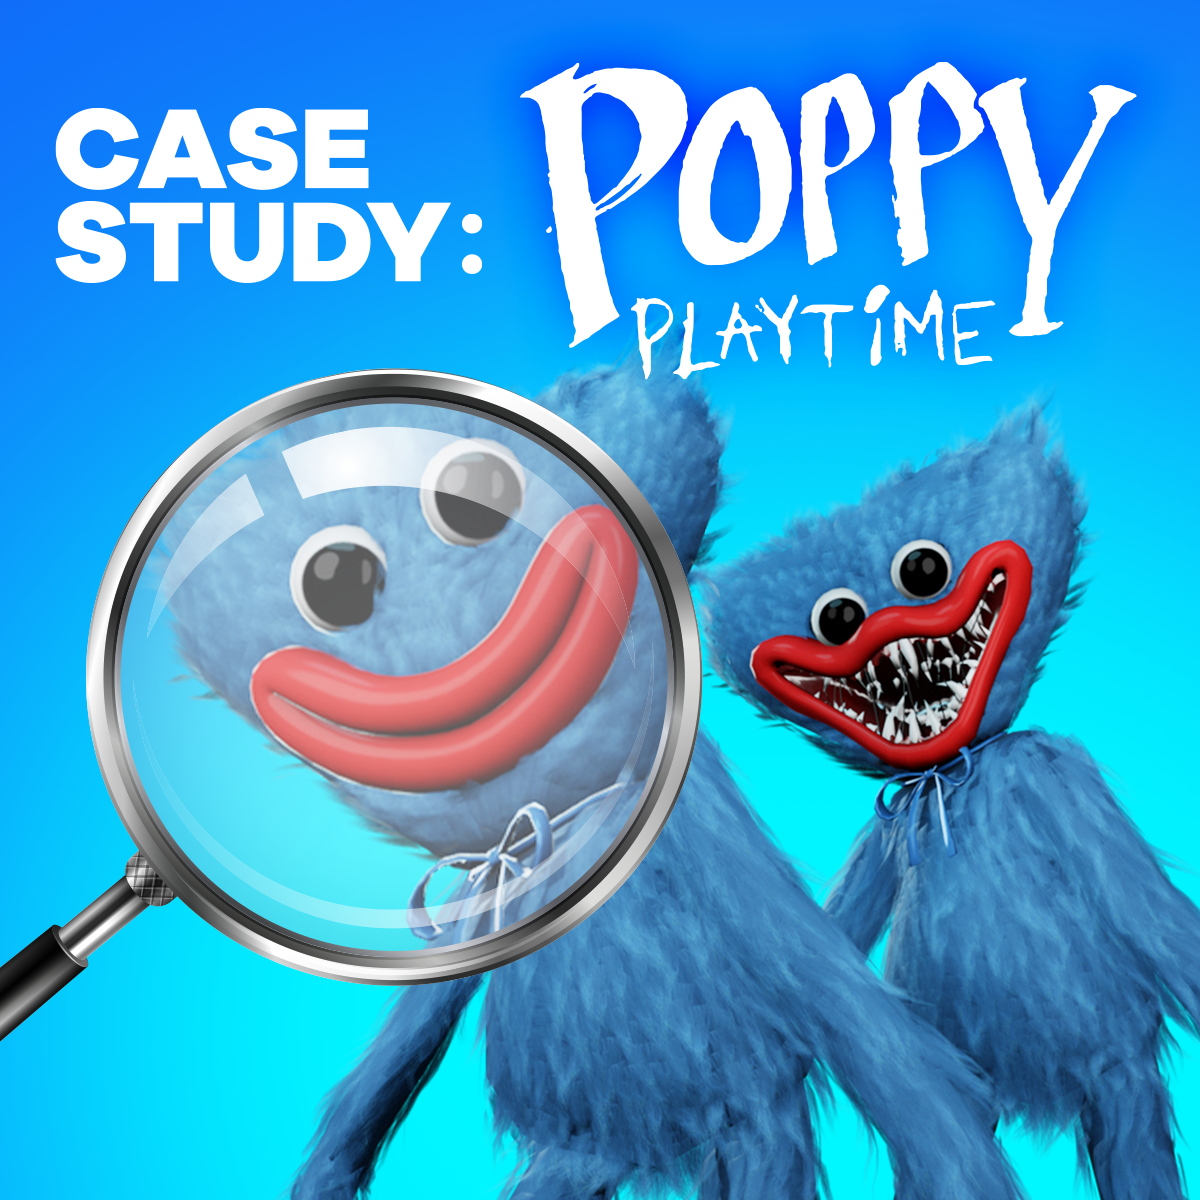 Poppy Playtime playtime co logo theme 